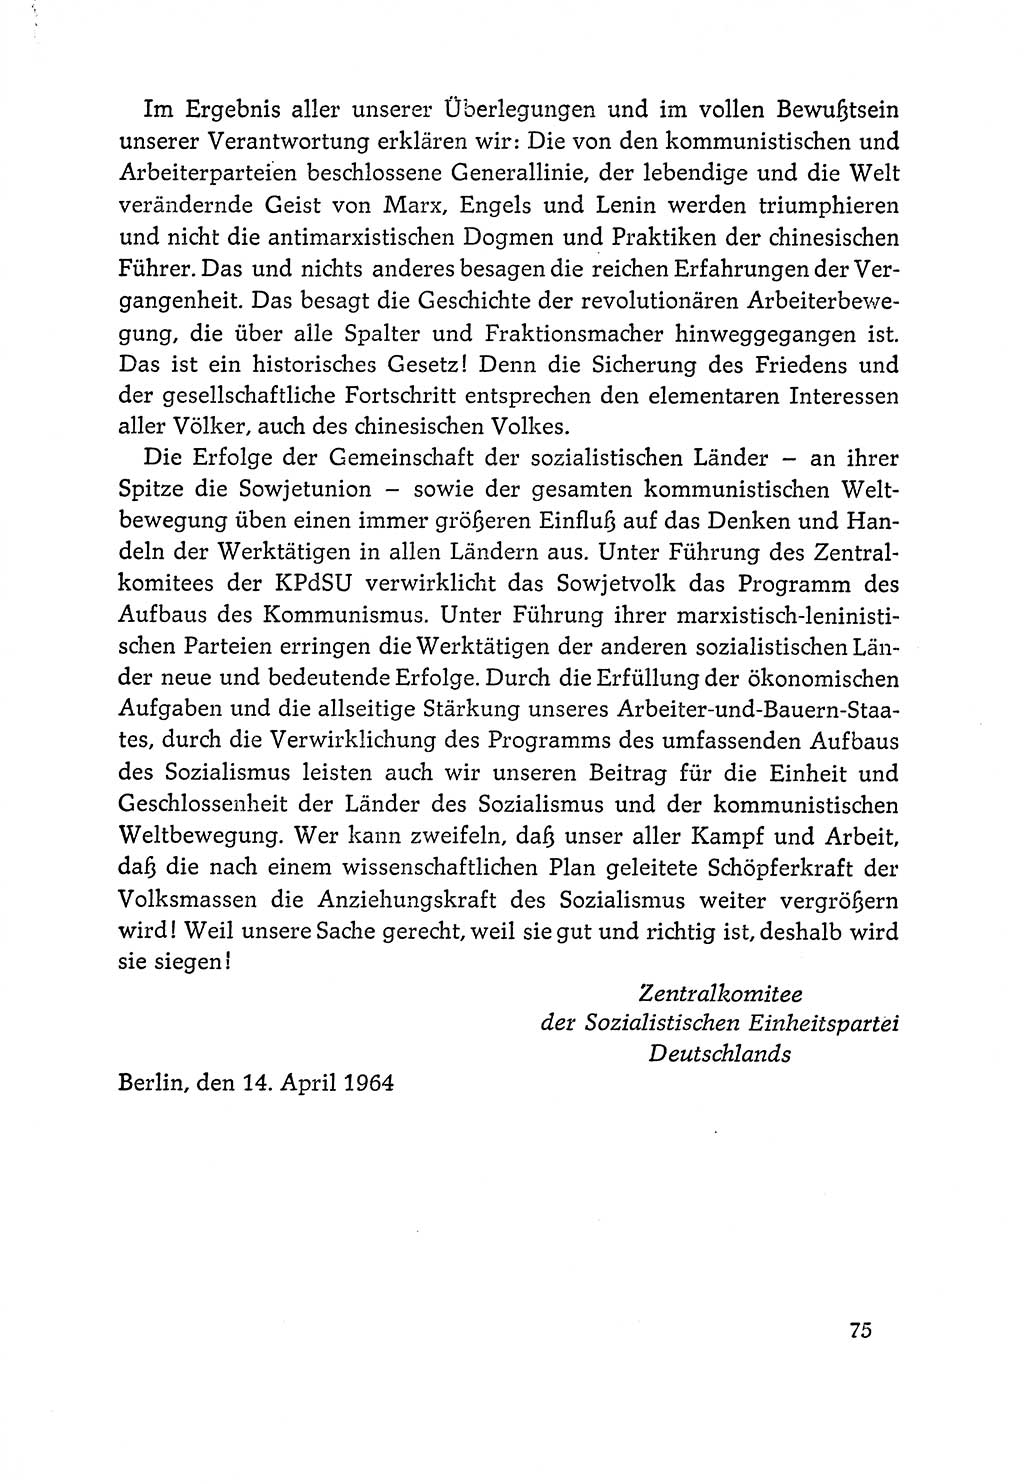 Dokumente der Sozialistischen Einheitspartei Deutschlands (SED) [Deutsche Demokratische Republik (DDR)] 1964-1965, Seite 75 (Dok. SED DDR 1964-1965, S. 75)